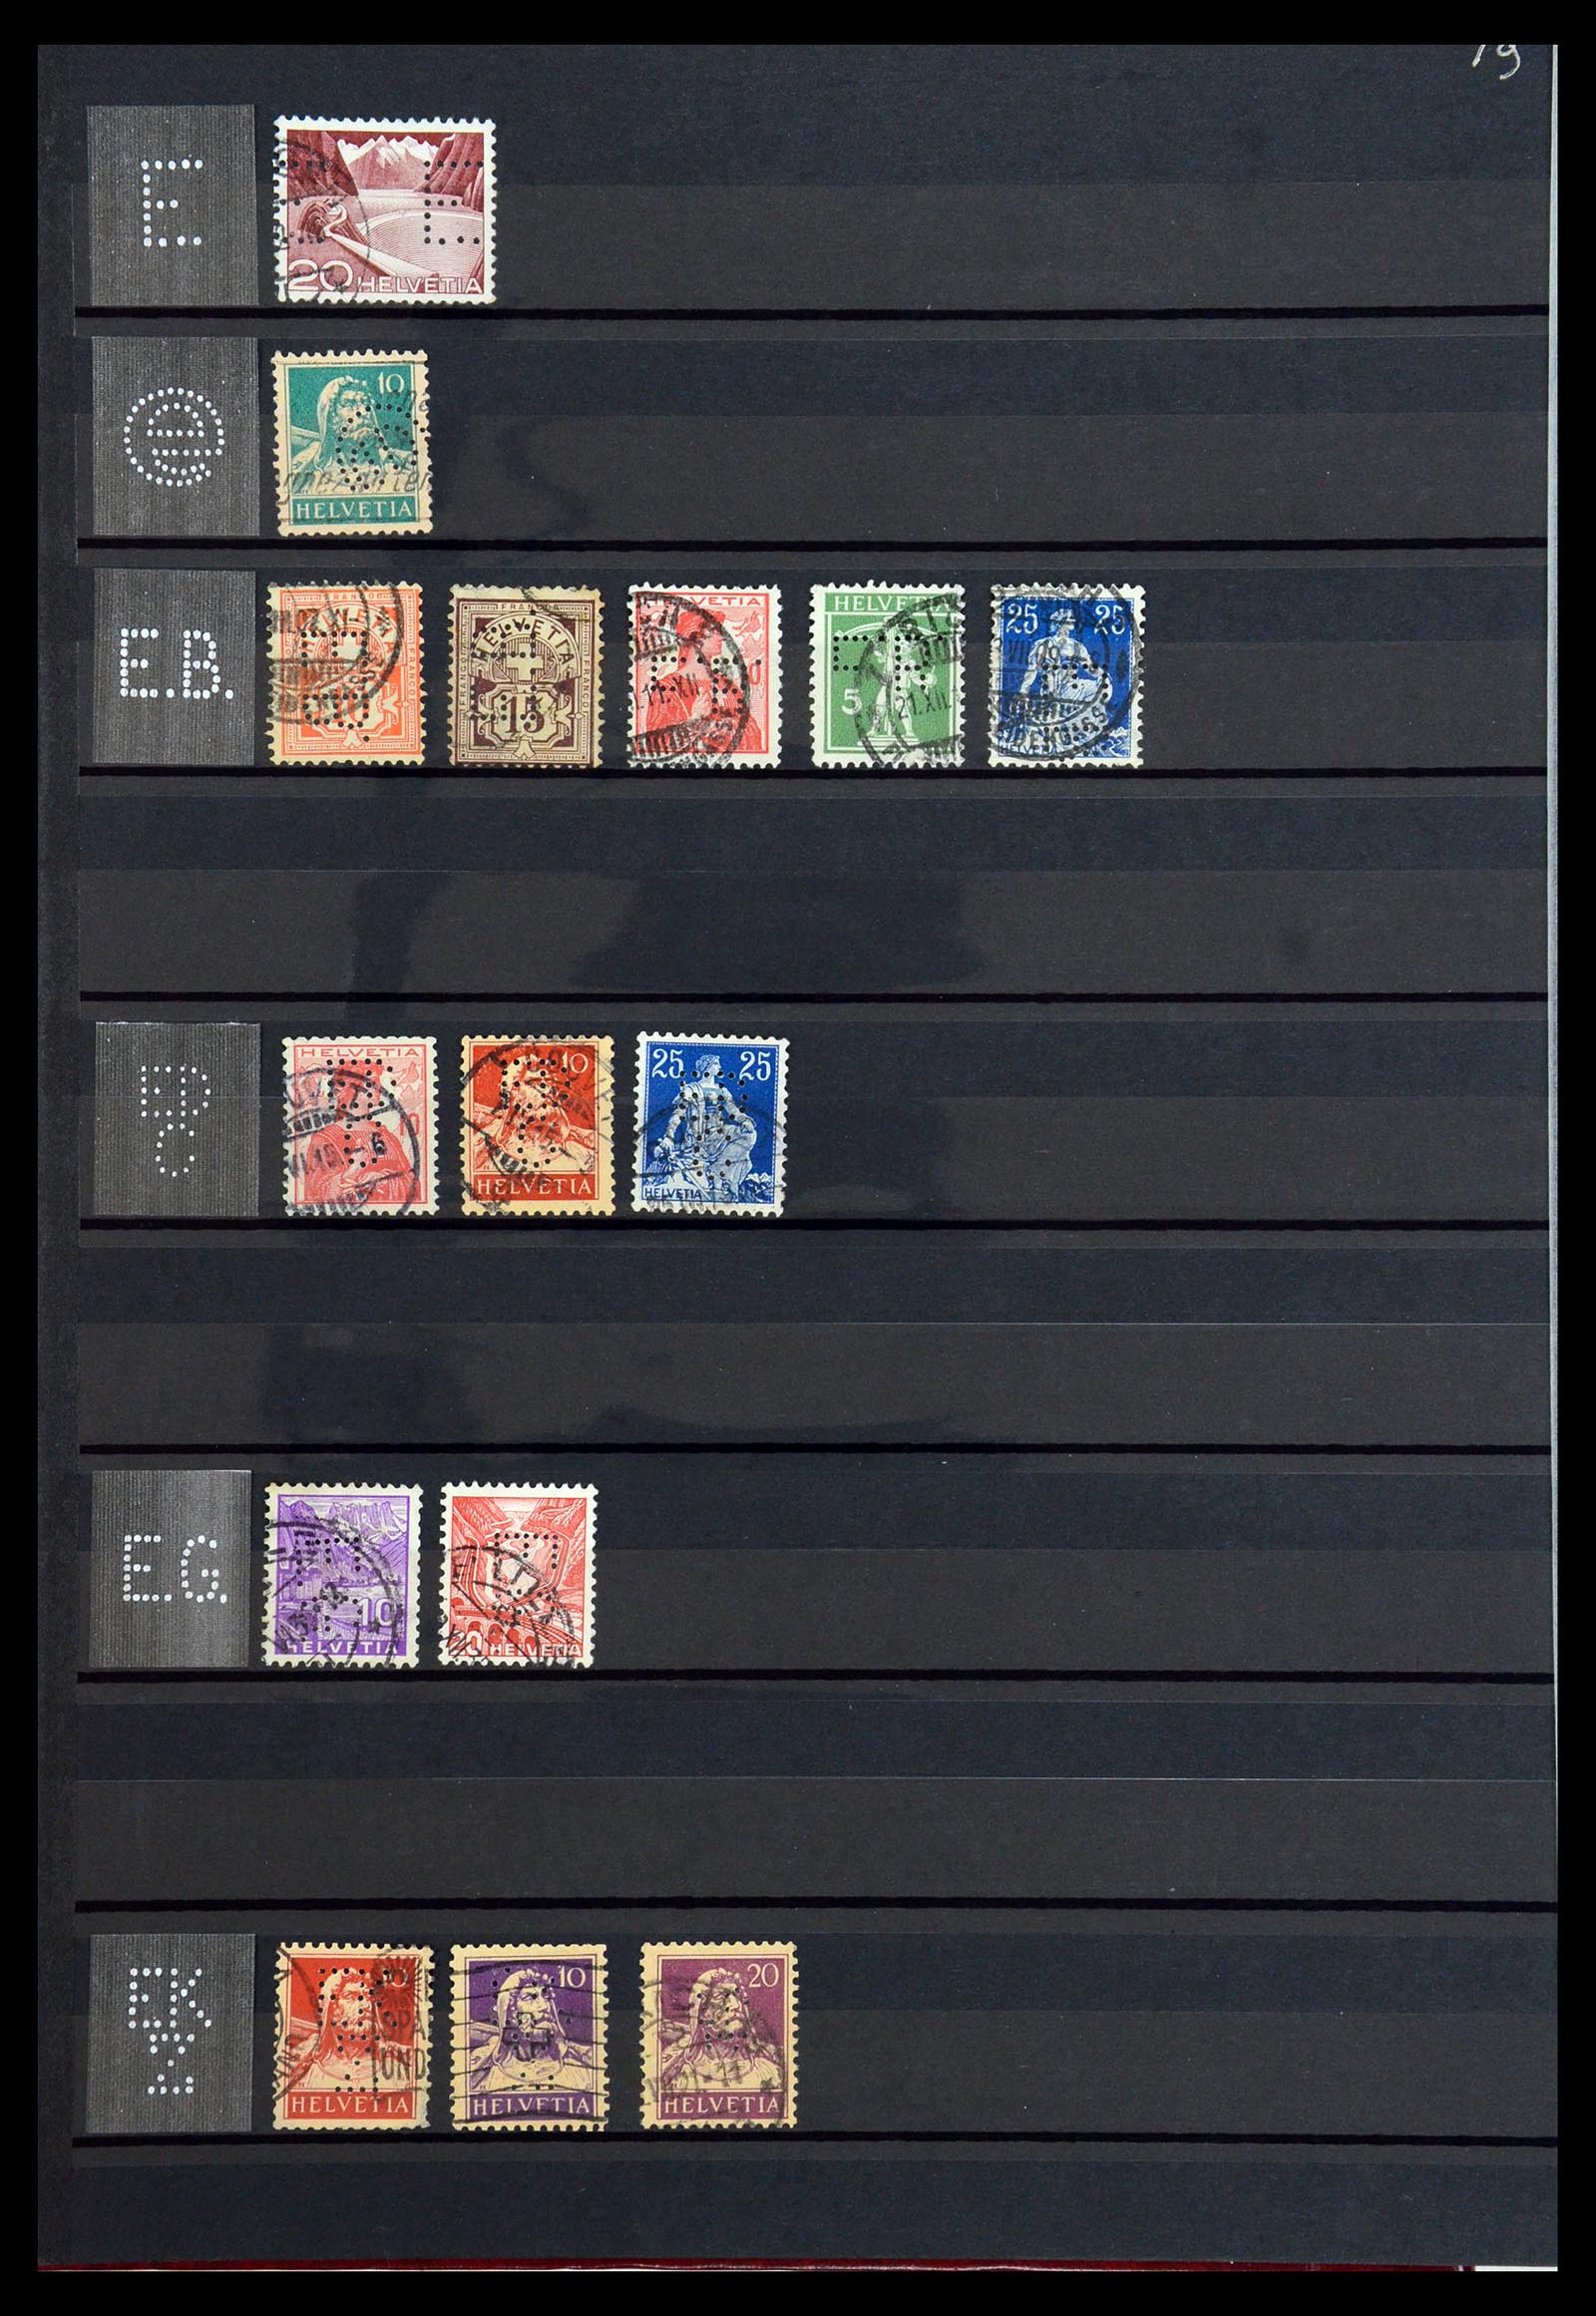 36372 016 - Stamp collection 36372 Switzerland perfins 1880-1960.